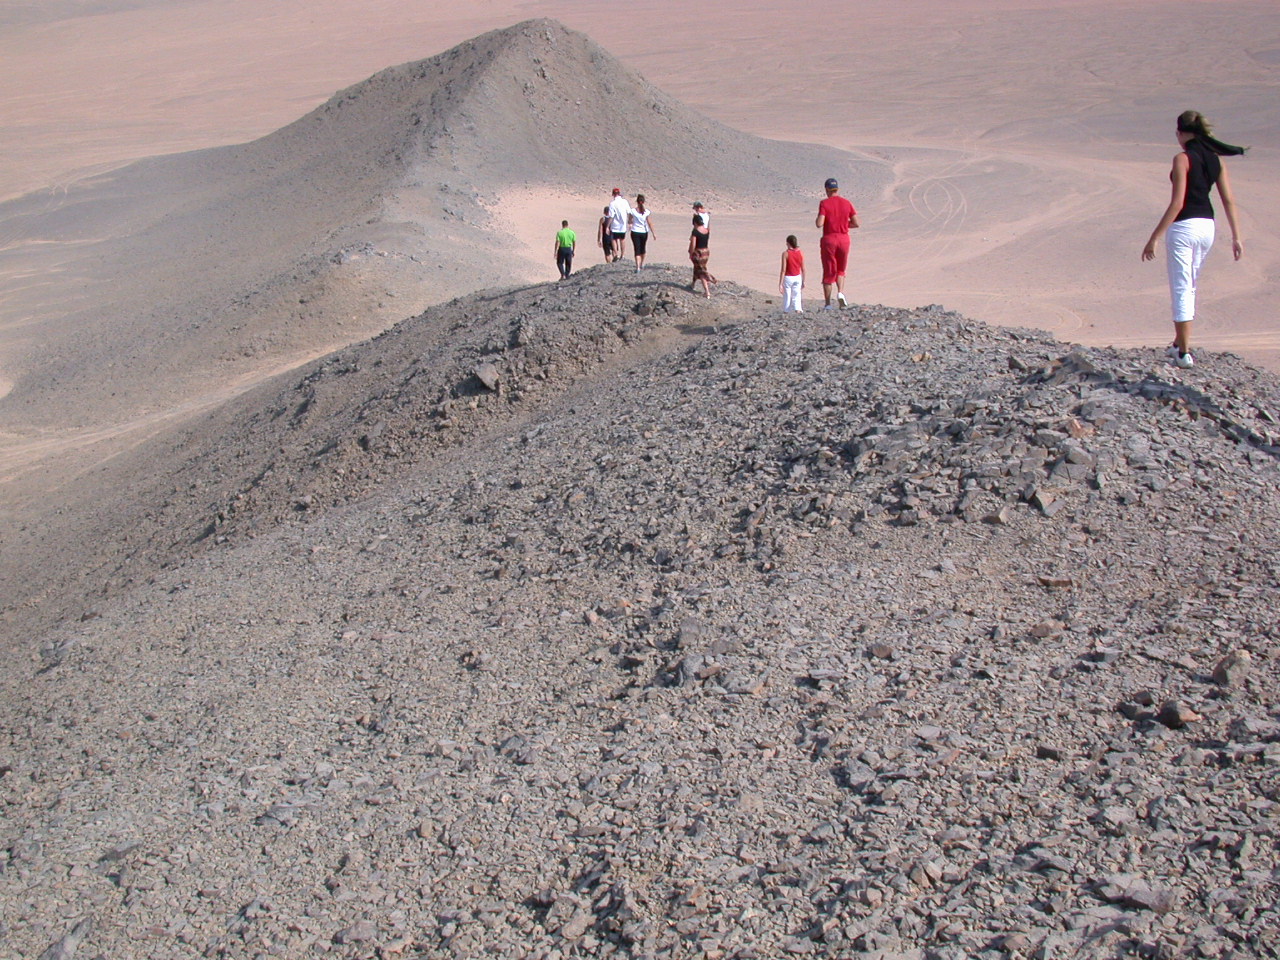 Egyptian desert, near Marsa Alam